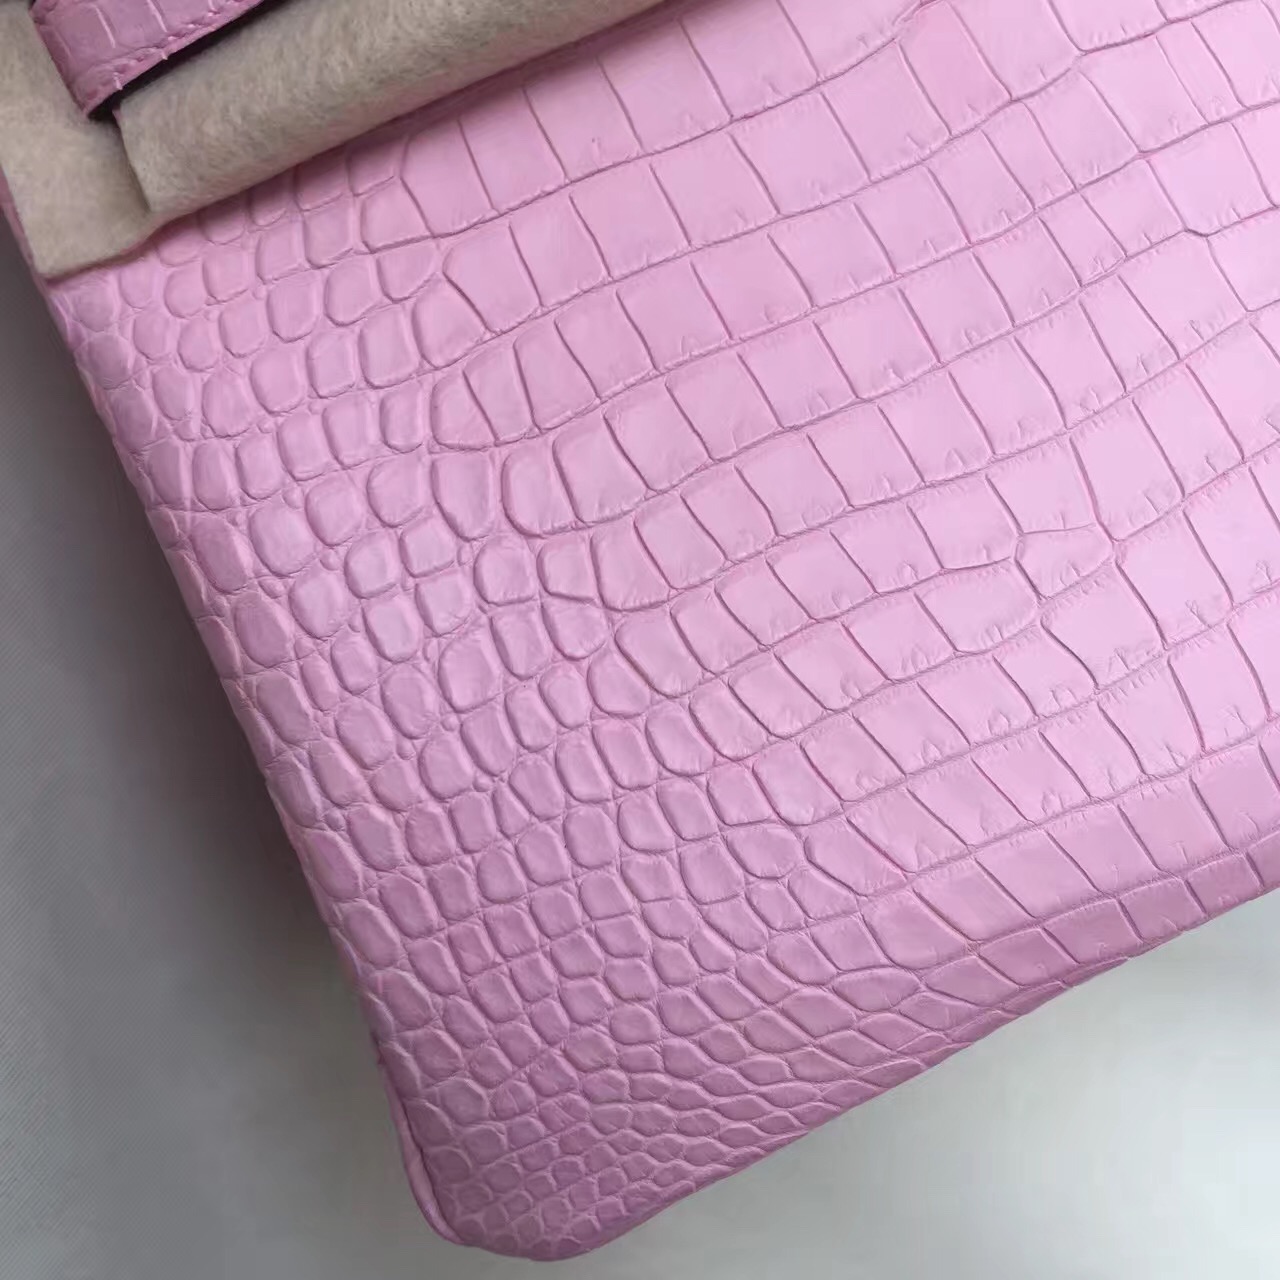 Sale Hermes Crocodile Matt Leather Birkin Bag30cm in 5P Rose Sakura